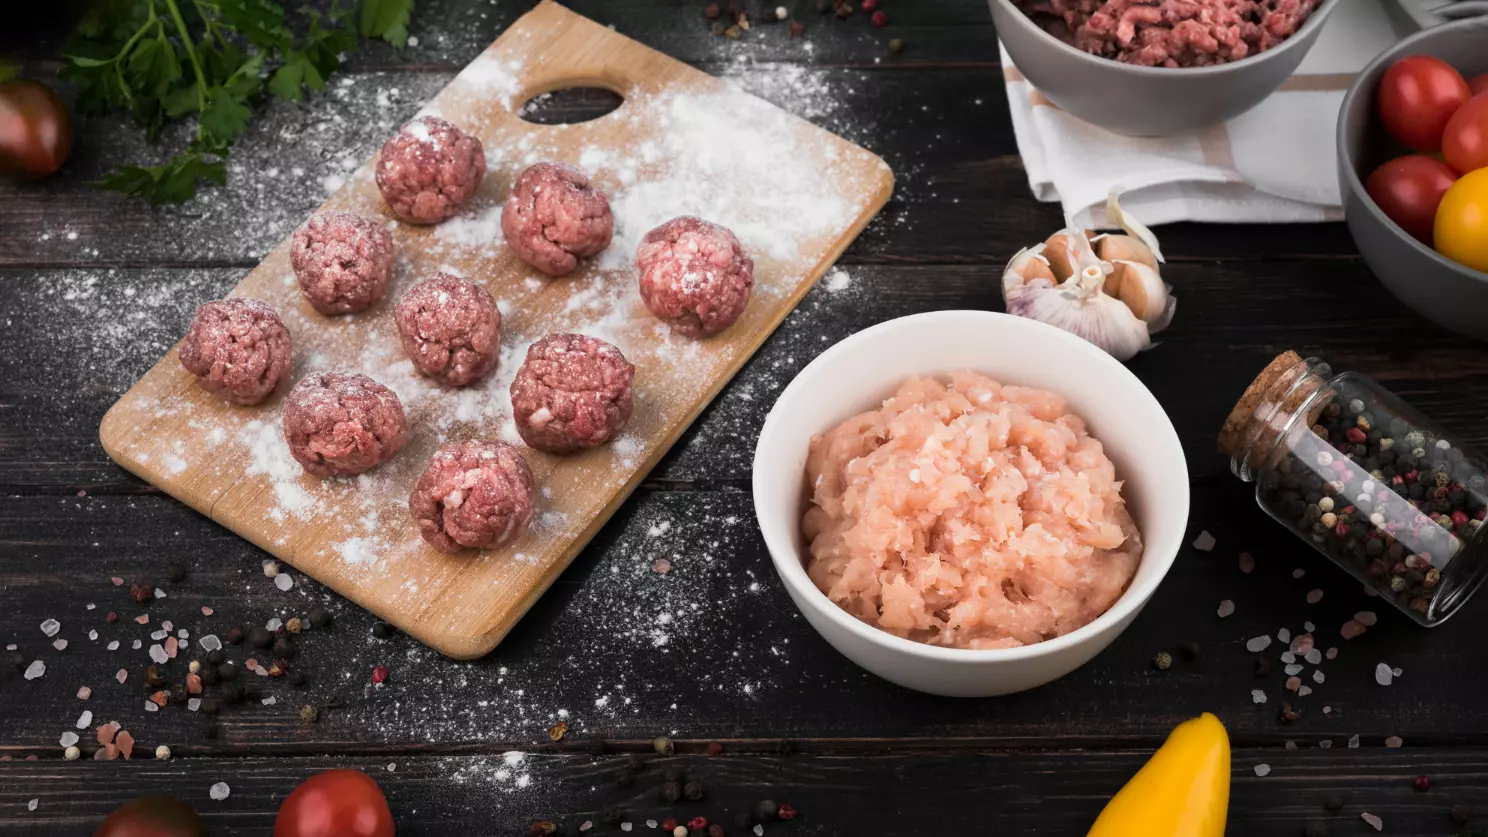 How long to cook frozen meatballs in crockpot?